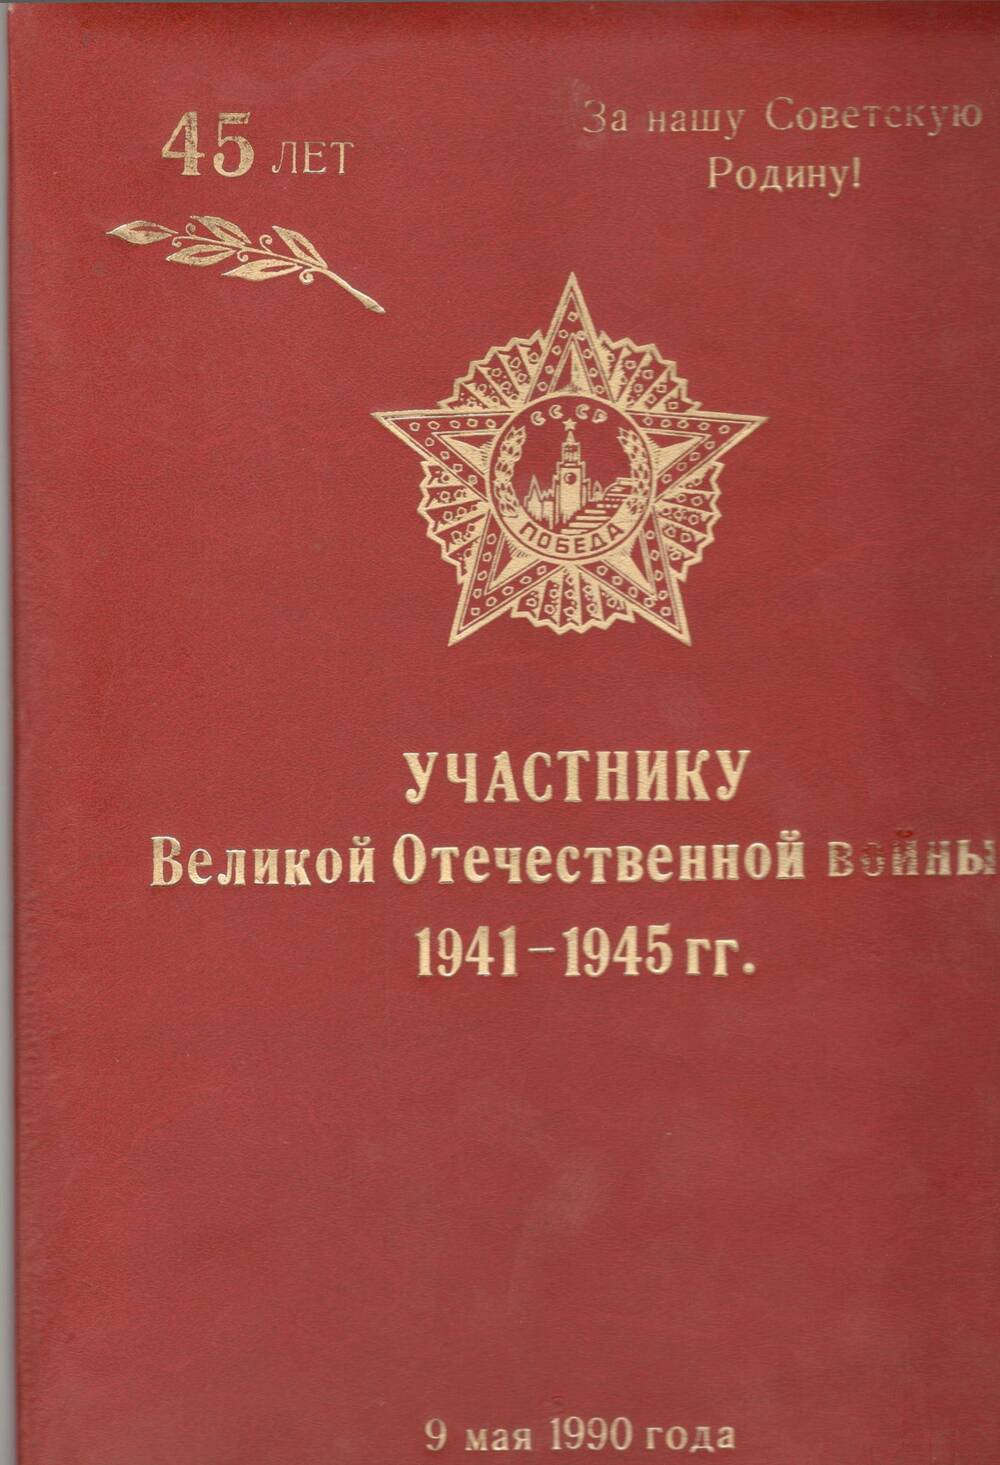 Адрес поздравительный Розовой Александре Алексеевне с 45ой годовщиной Победы в Великой Отечественной войне.